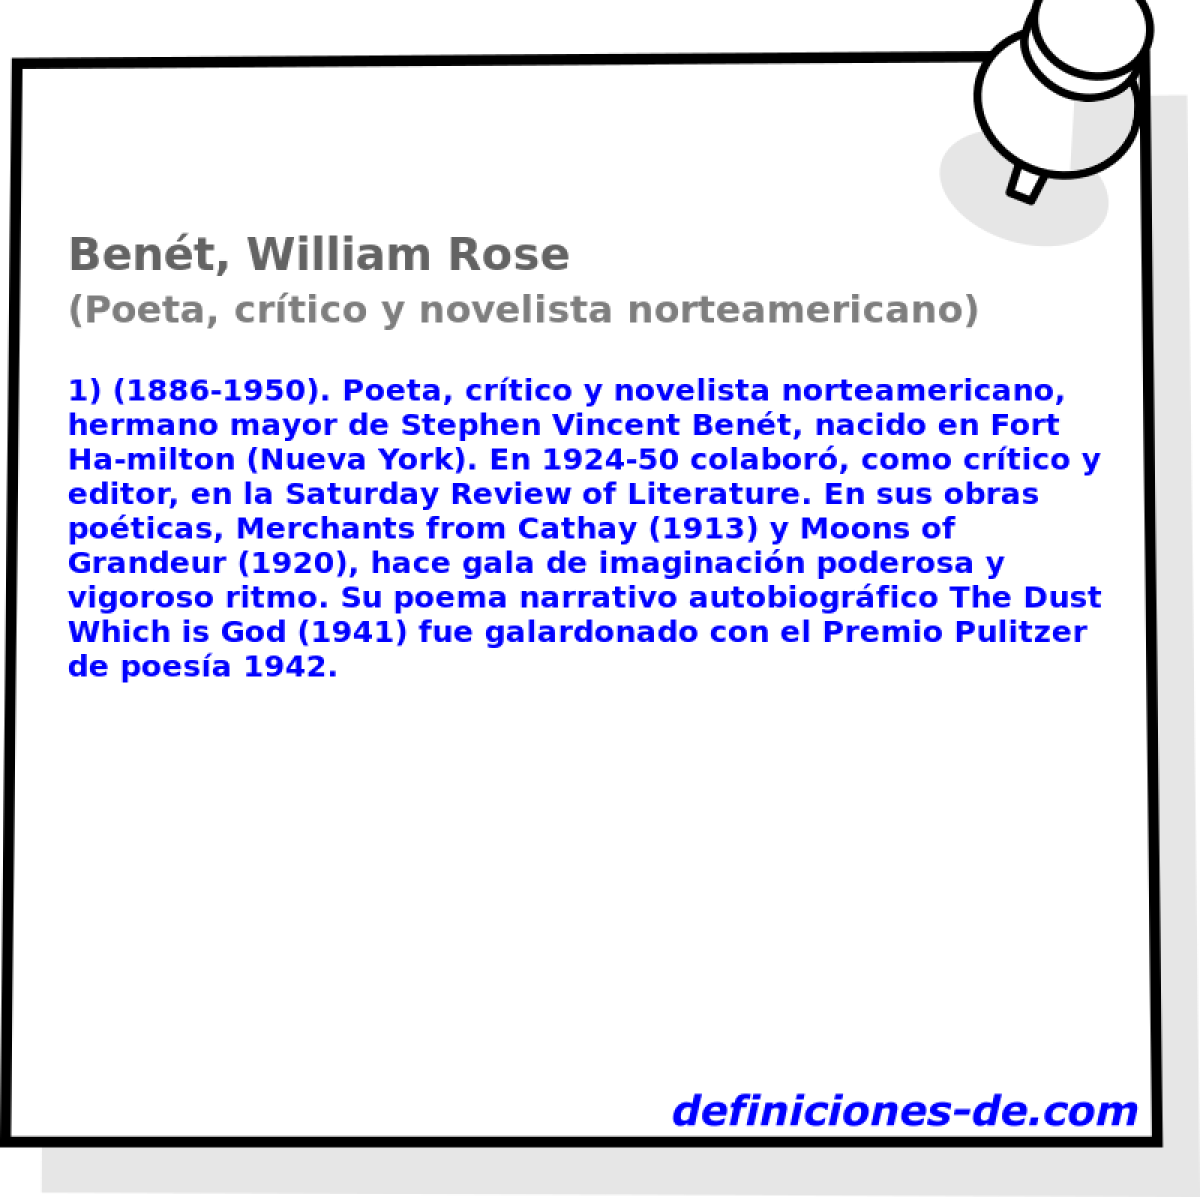 Bent, William Rose (Poeta, crtico y novelista norteamericano)